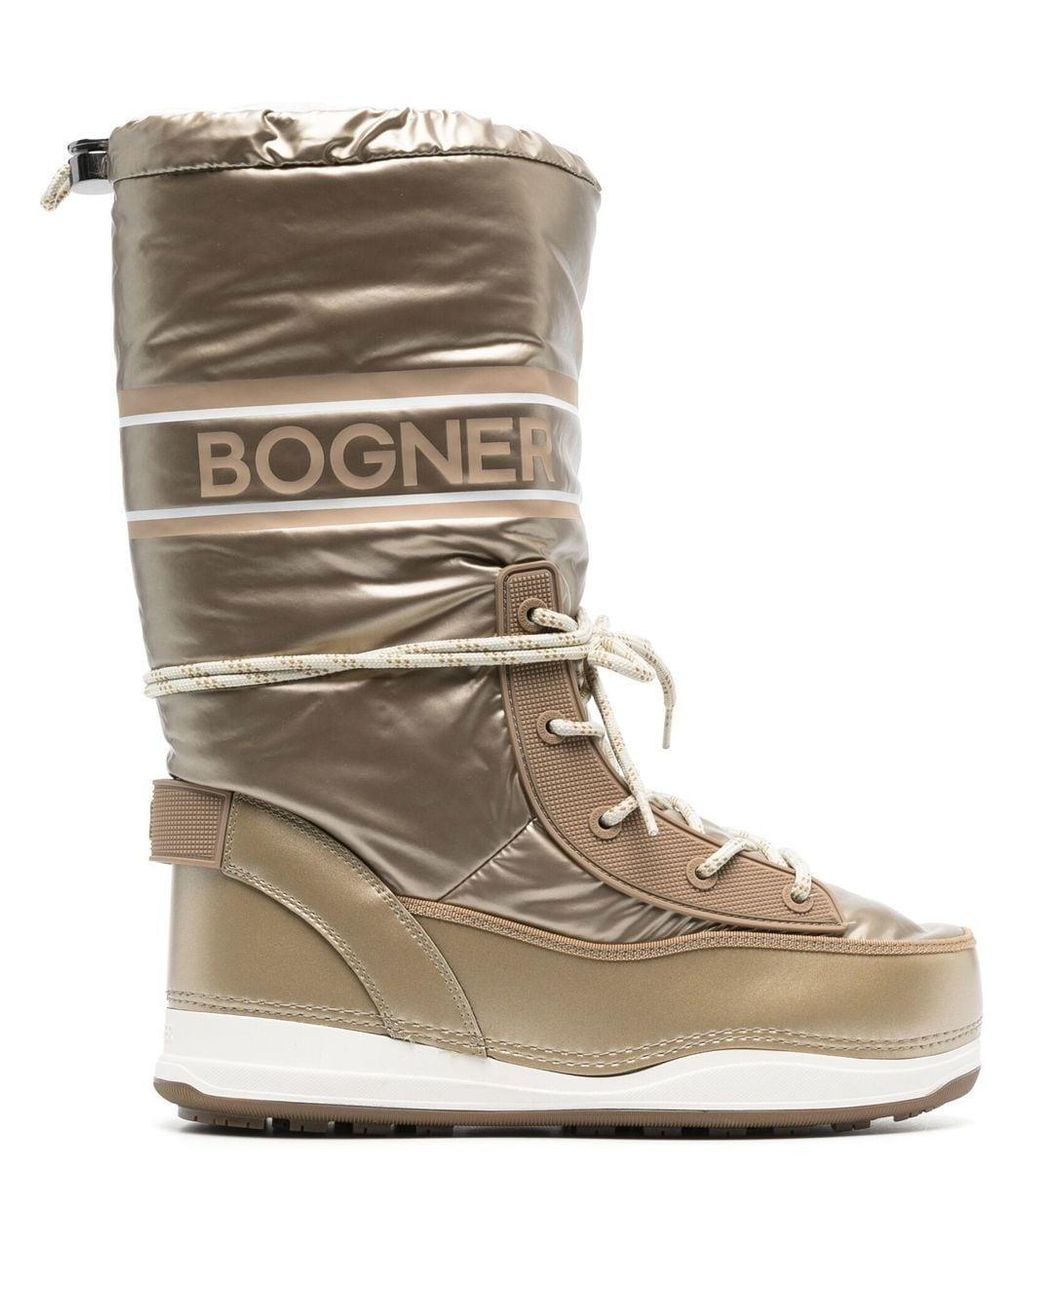 Bogner Les Arcs Snow Boots in Natural | Lyst Canada